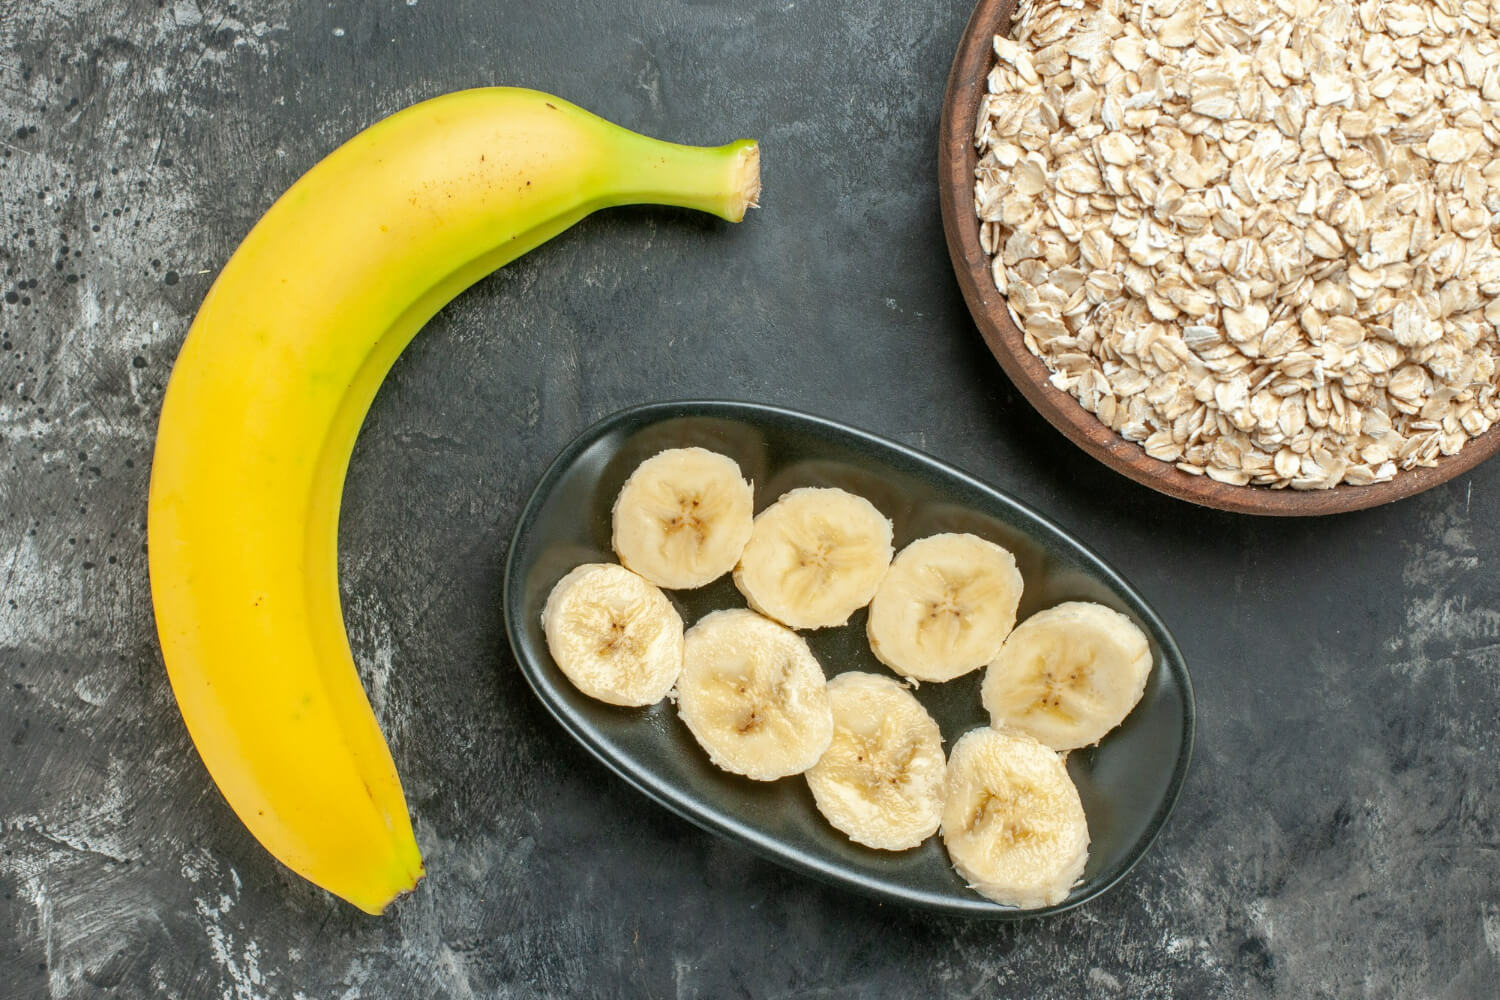 바나나 한개와 검은 접시에 잘라진 바나나가 놓여져 있고 그 옆에 귀리가 담겨있는 접시가 놓여져 있다.